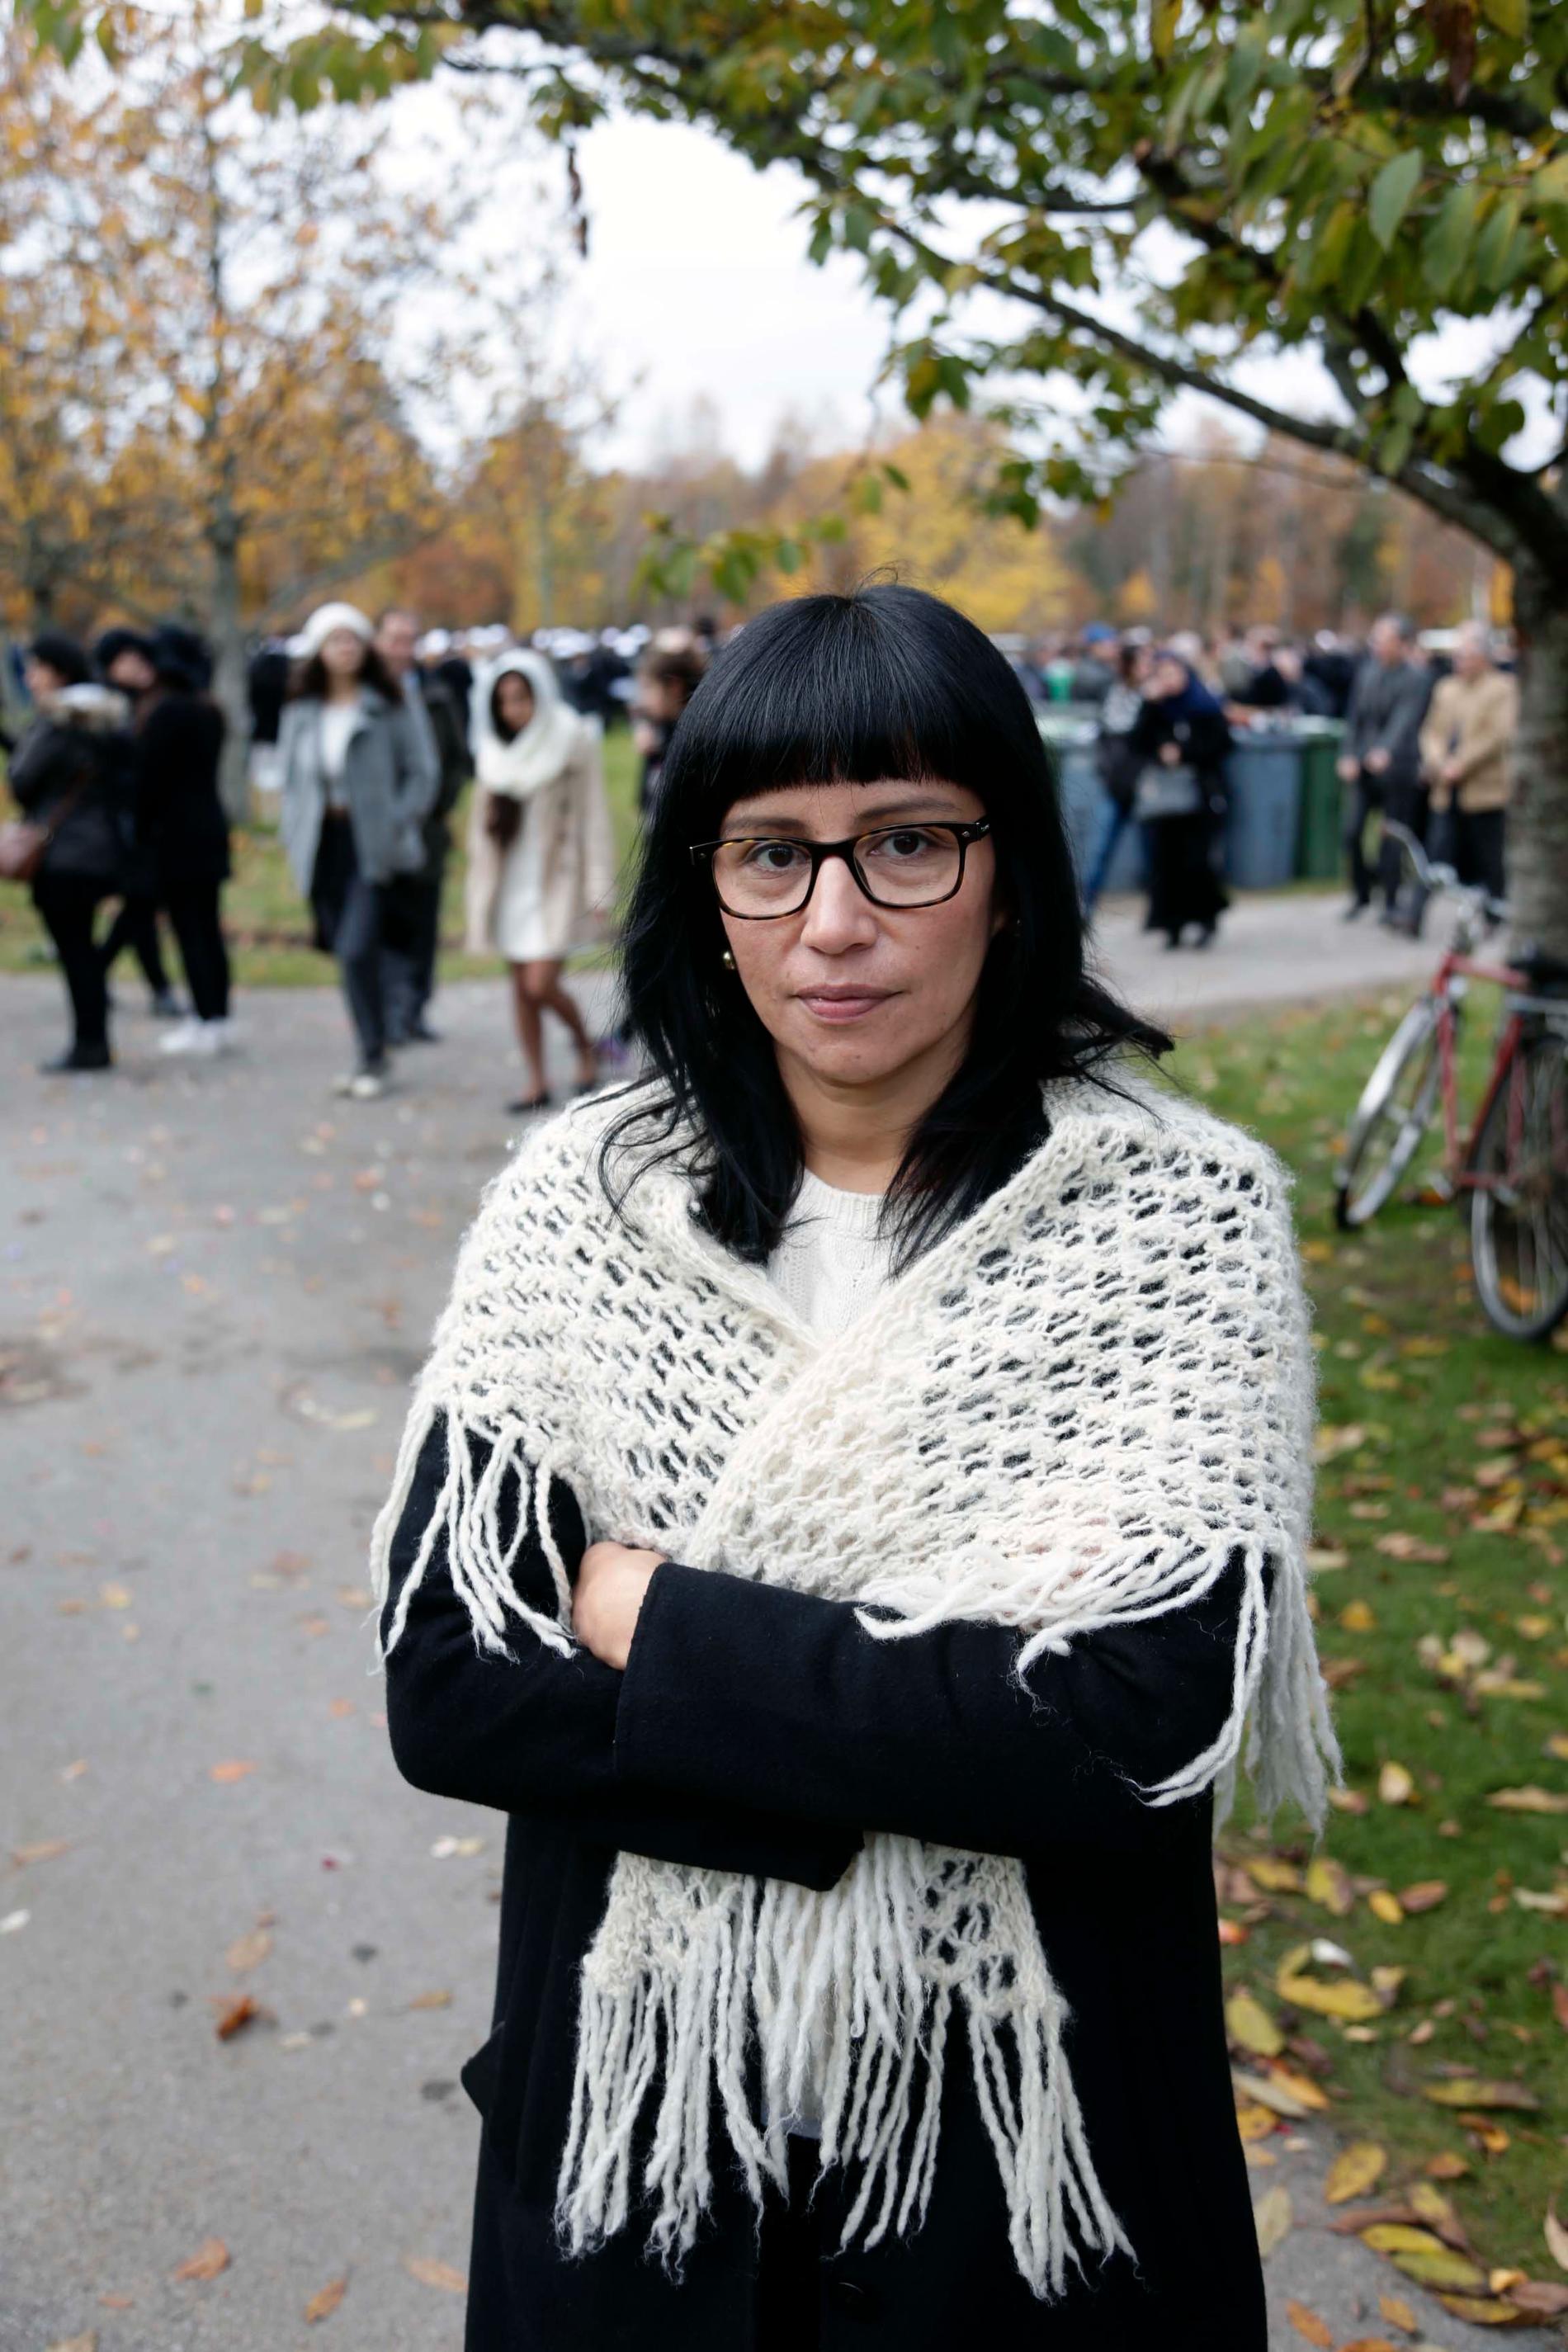 Rossana Dinamarca (V) berättar att hon träffade en mamma som uppmanande henne att göra någonting åt situationen i Sverige.
– Politiker och journalister måste fatta det här. Vi har alla ett stort ansvar, säger hon till Aftonbladet.